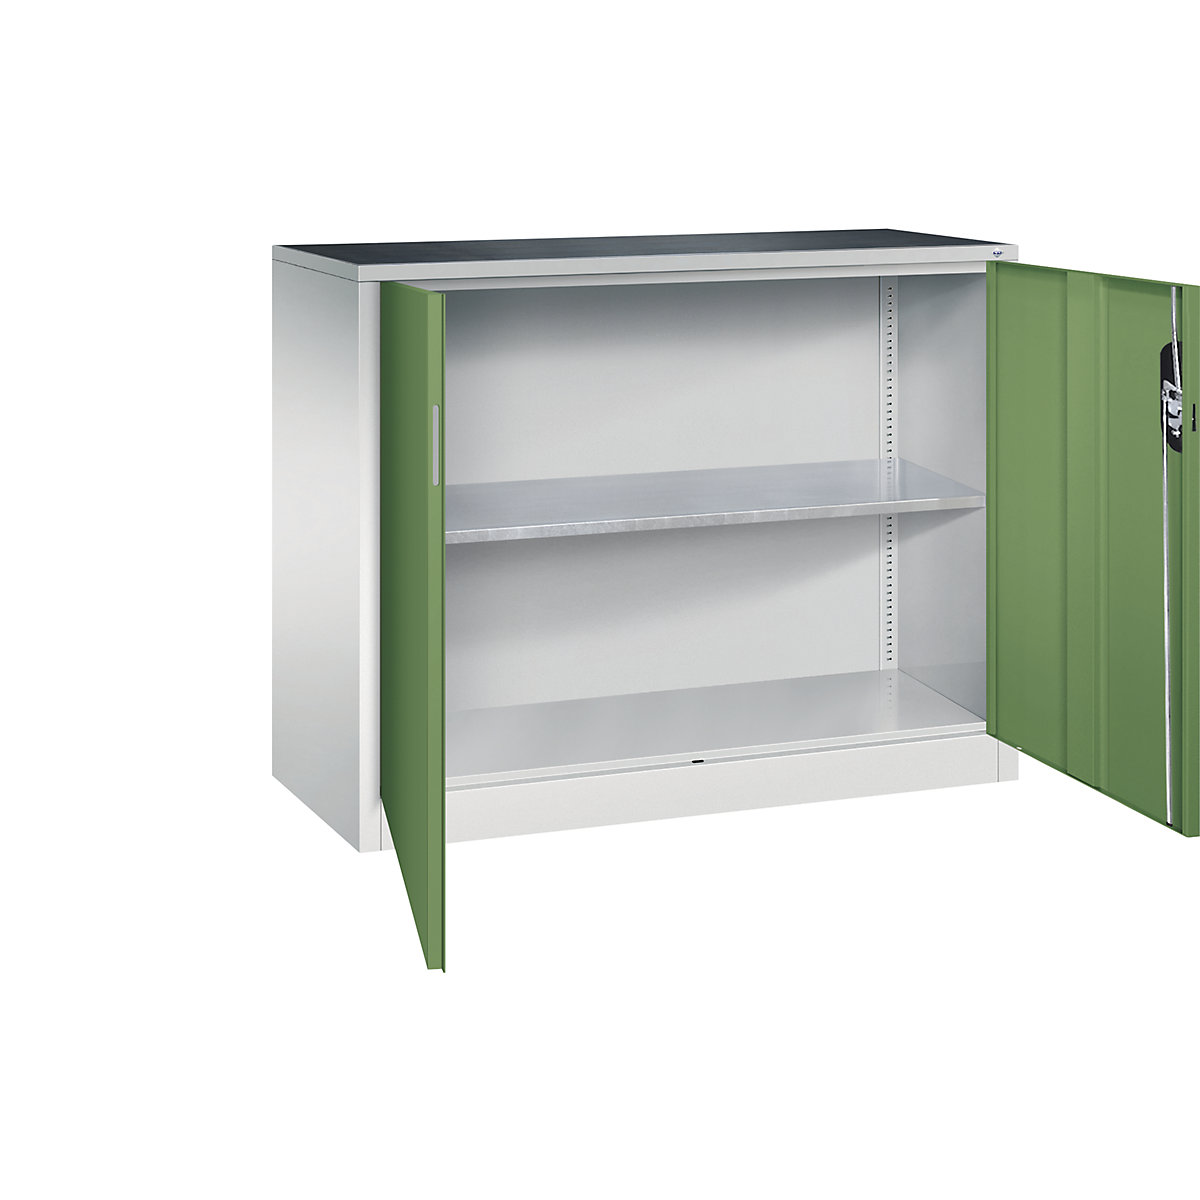 Workshop side cupboard with hinged doors – C+P